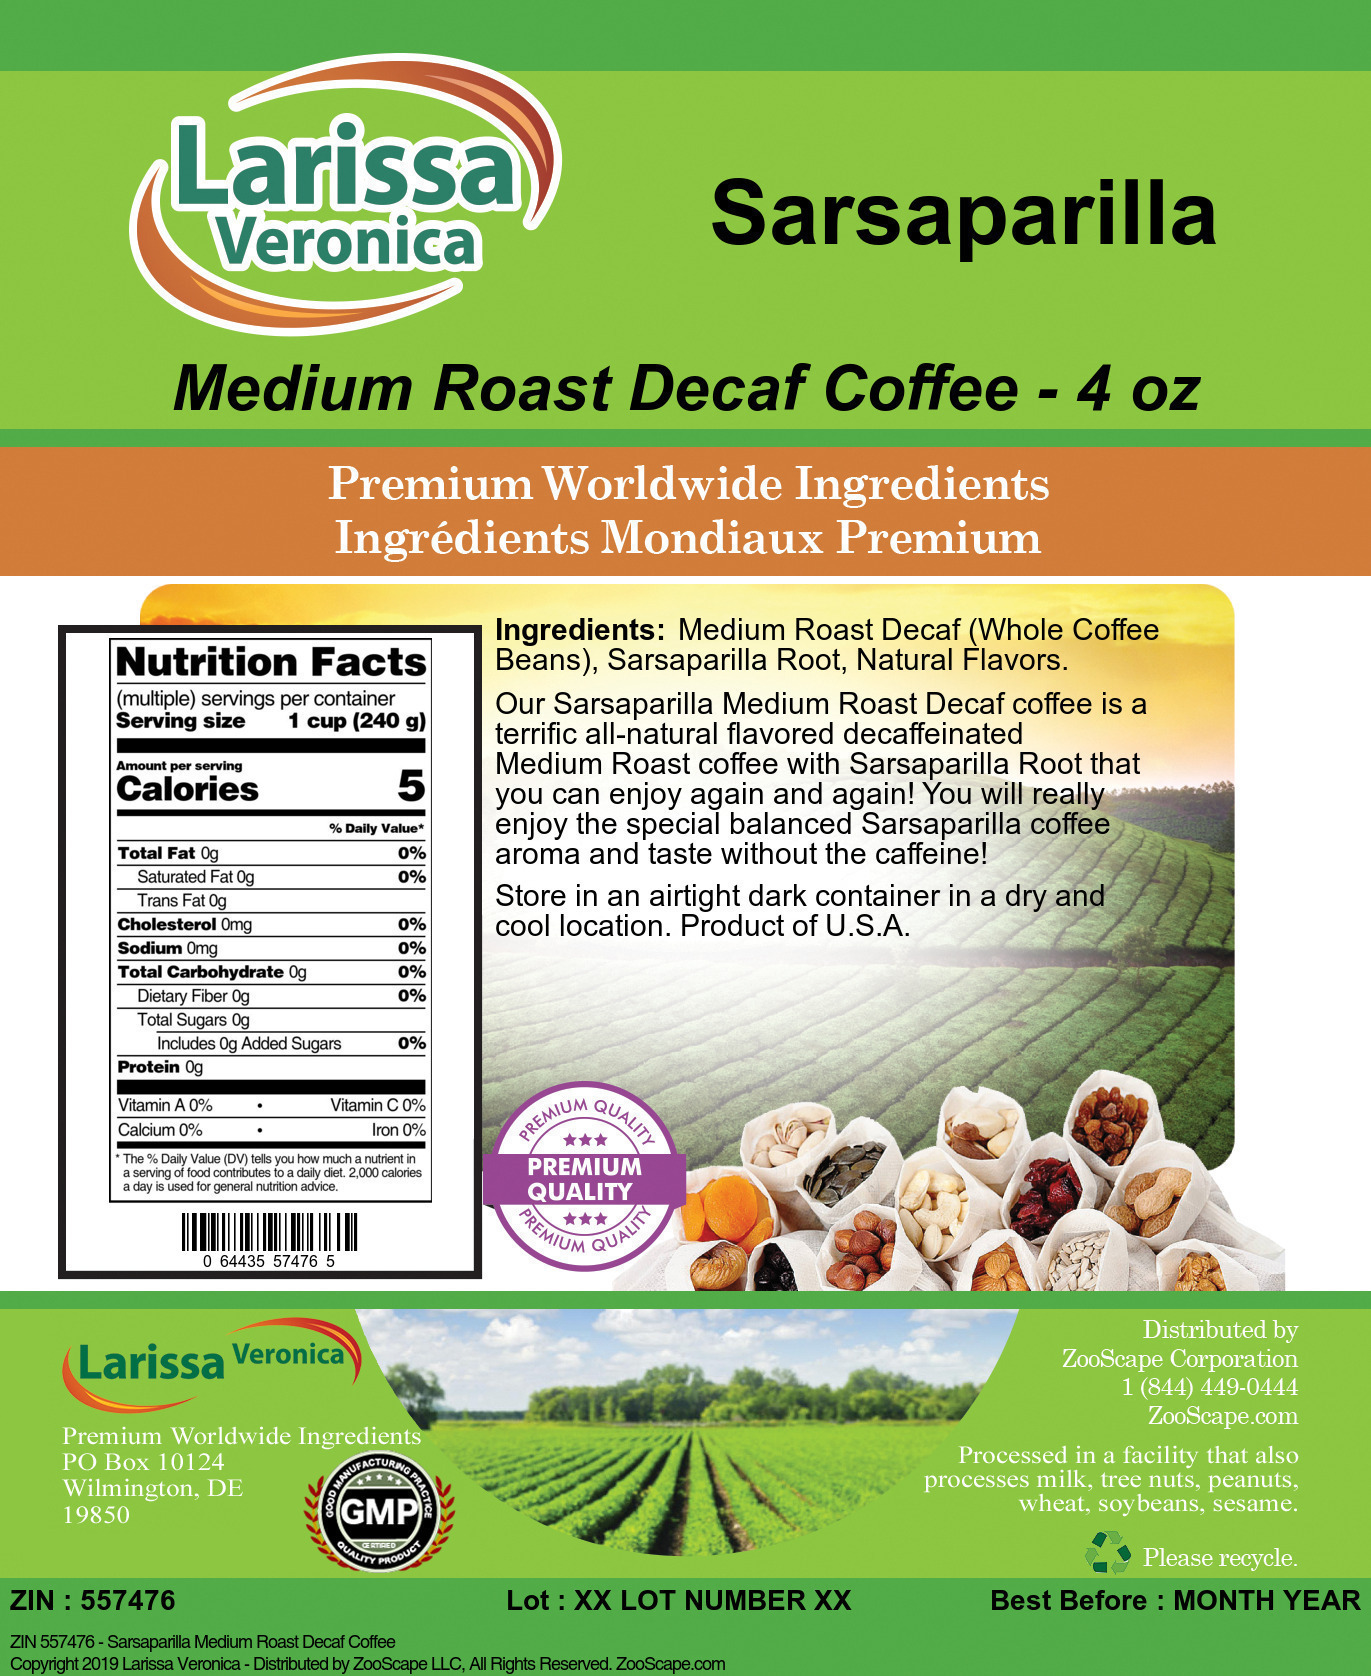 Sarsaparilla Medium Roast Decaf Coffee - Label